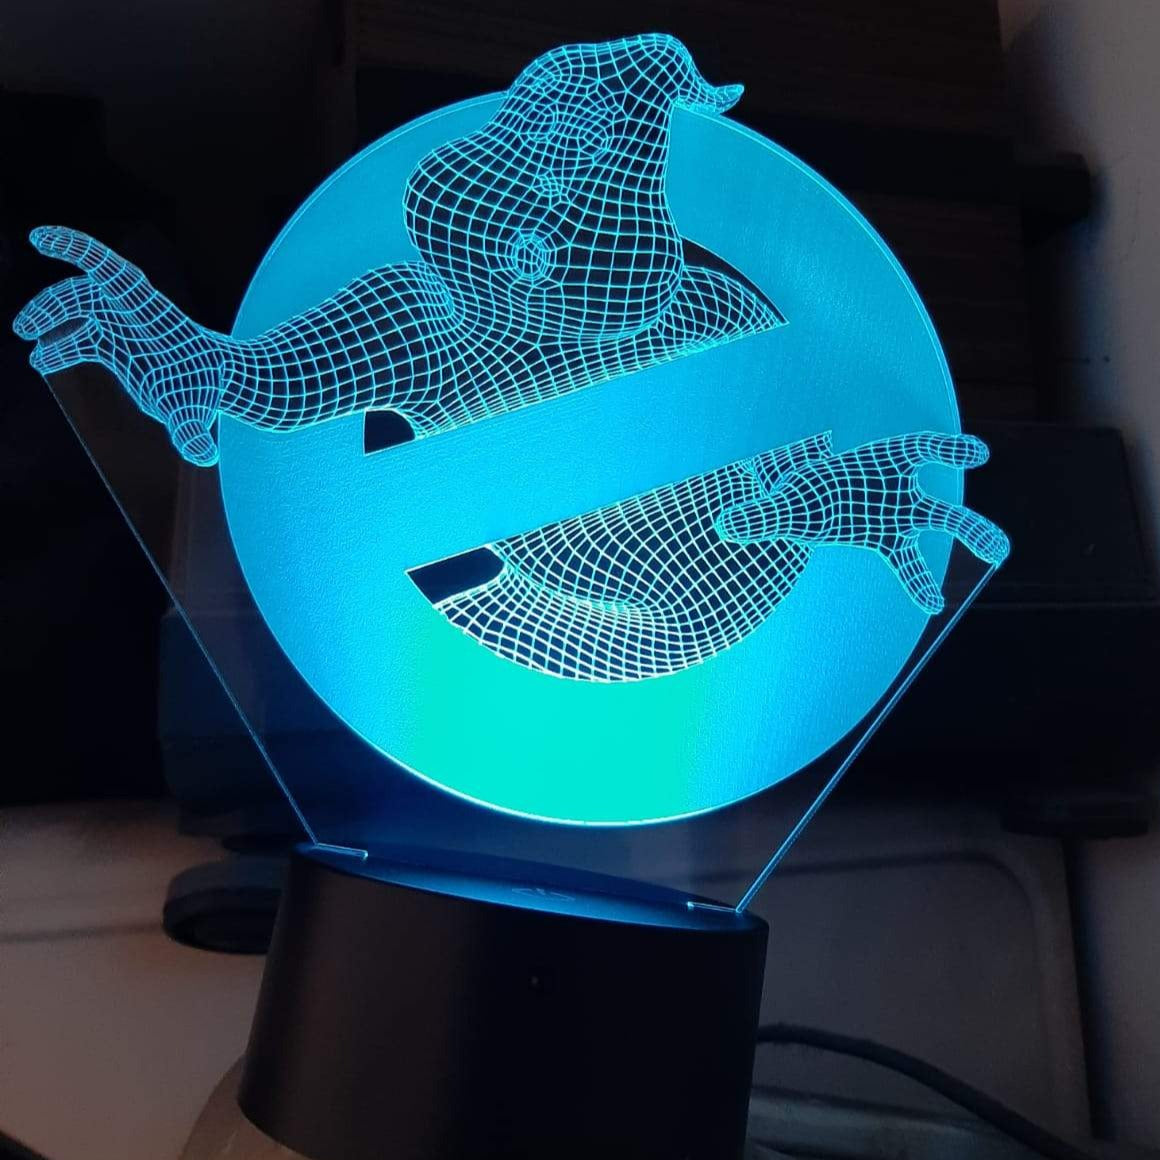 Lampada personalizzata inplexiglass e led Ghostbusters